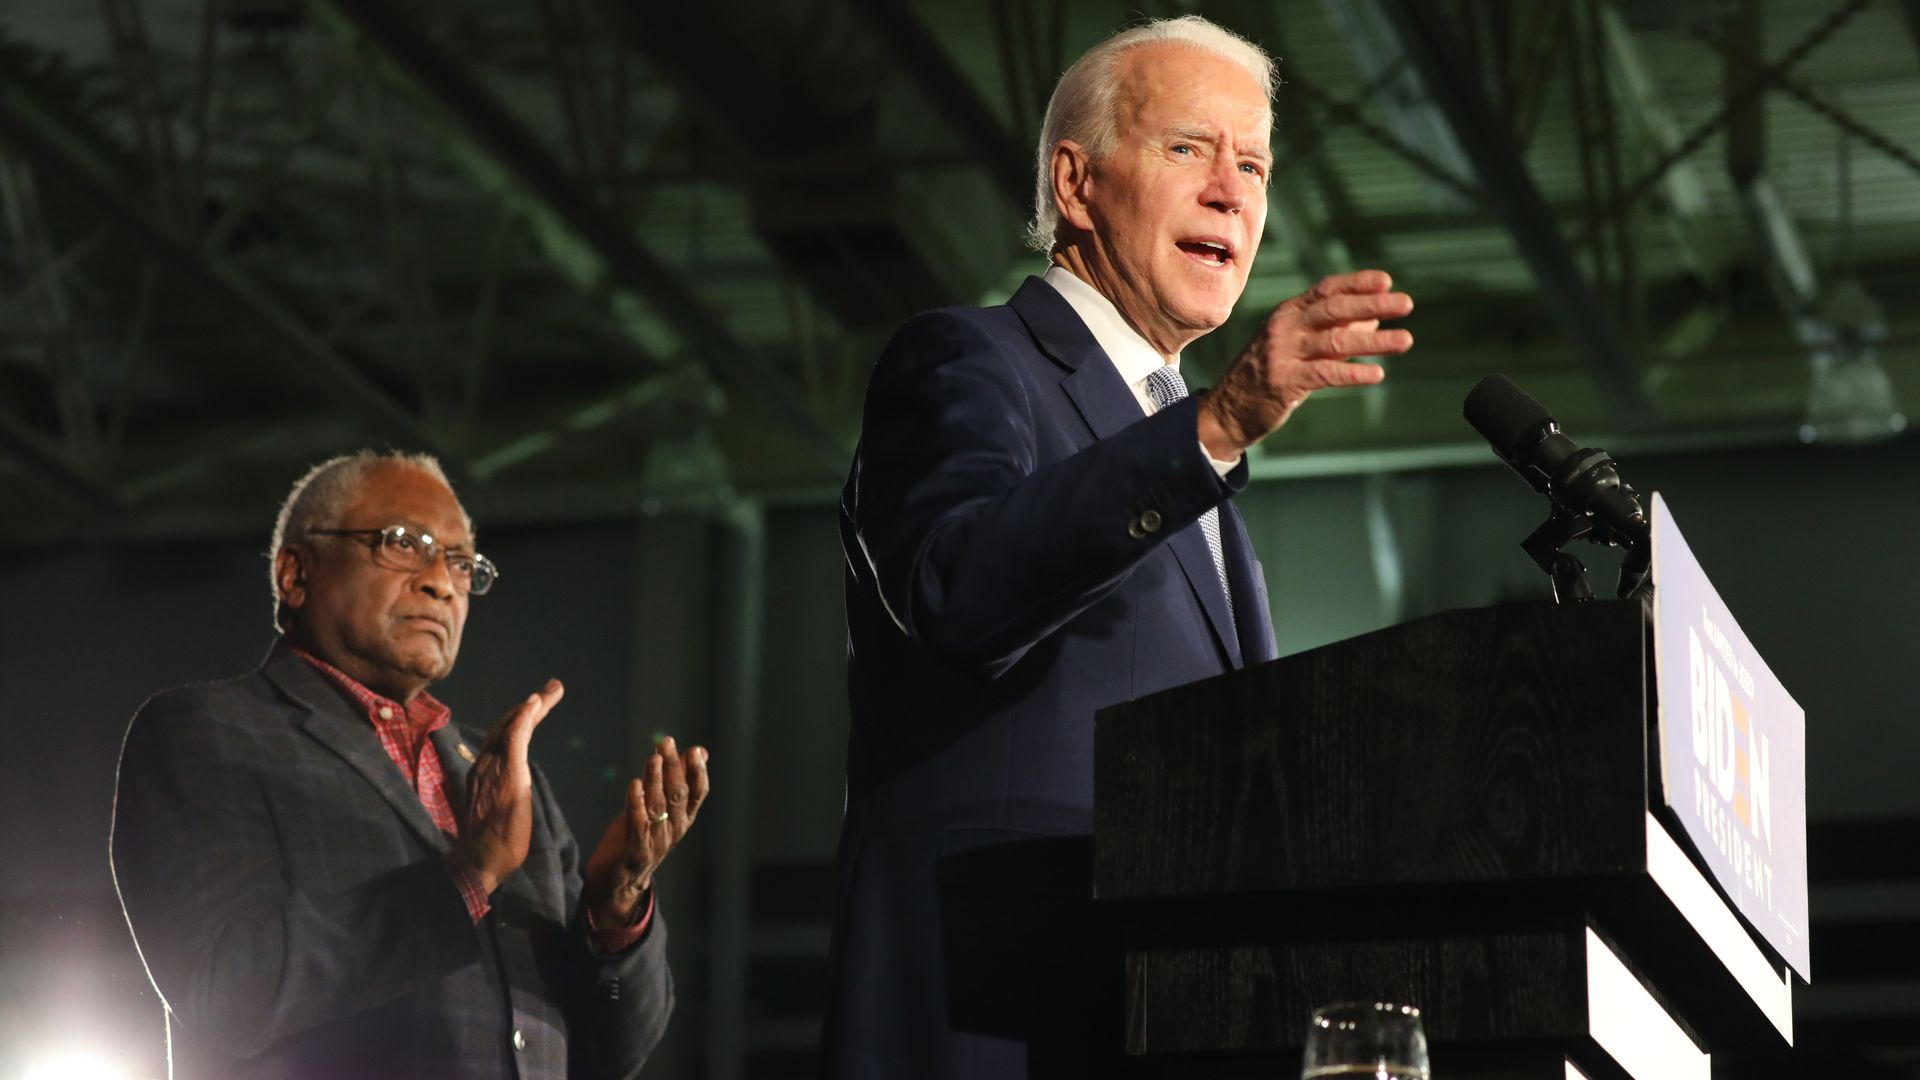 In this image, Clyburn stands behind Biden. Biden stands at a podium.